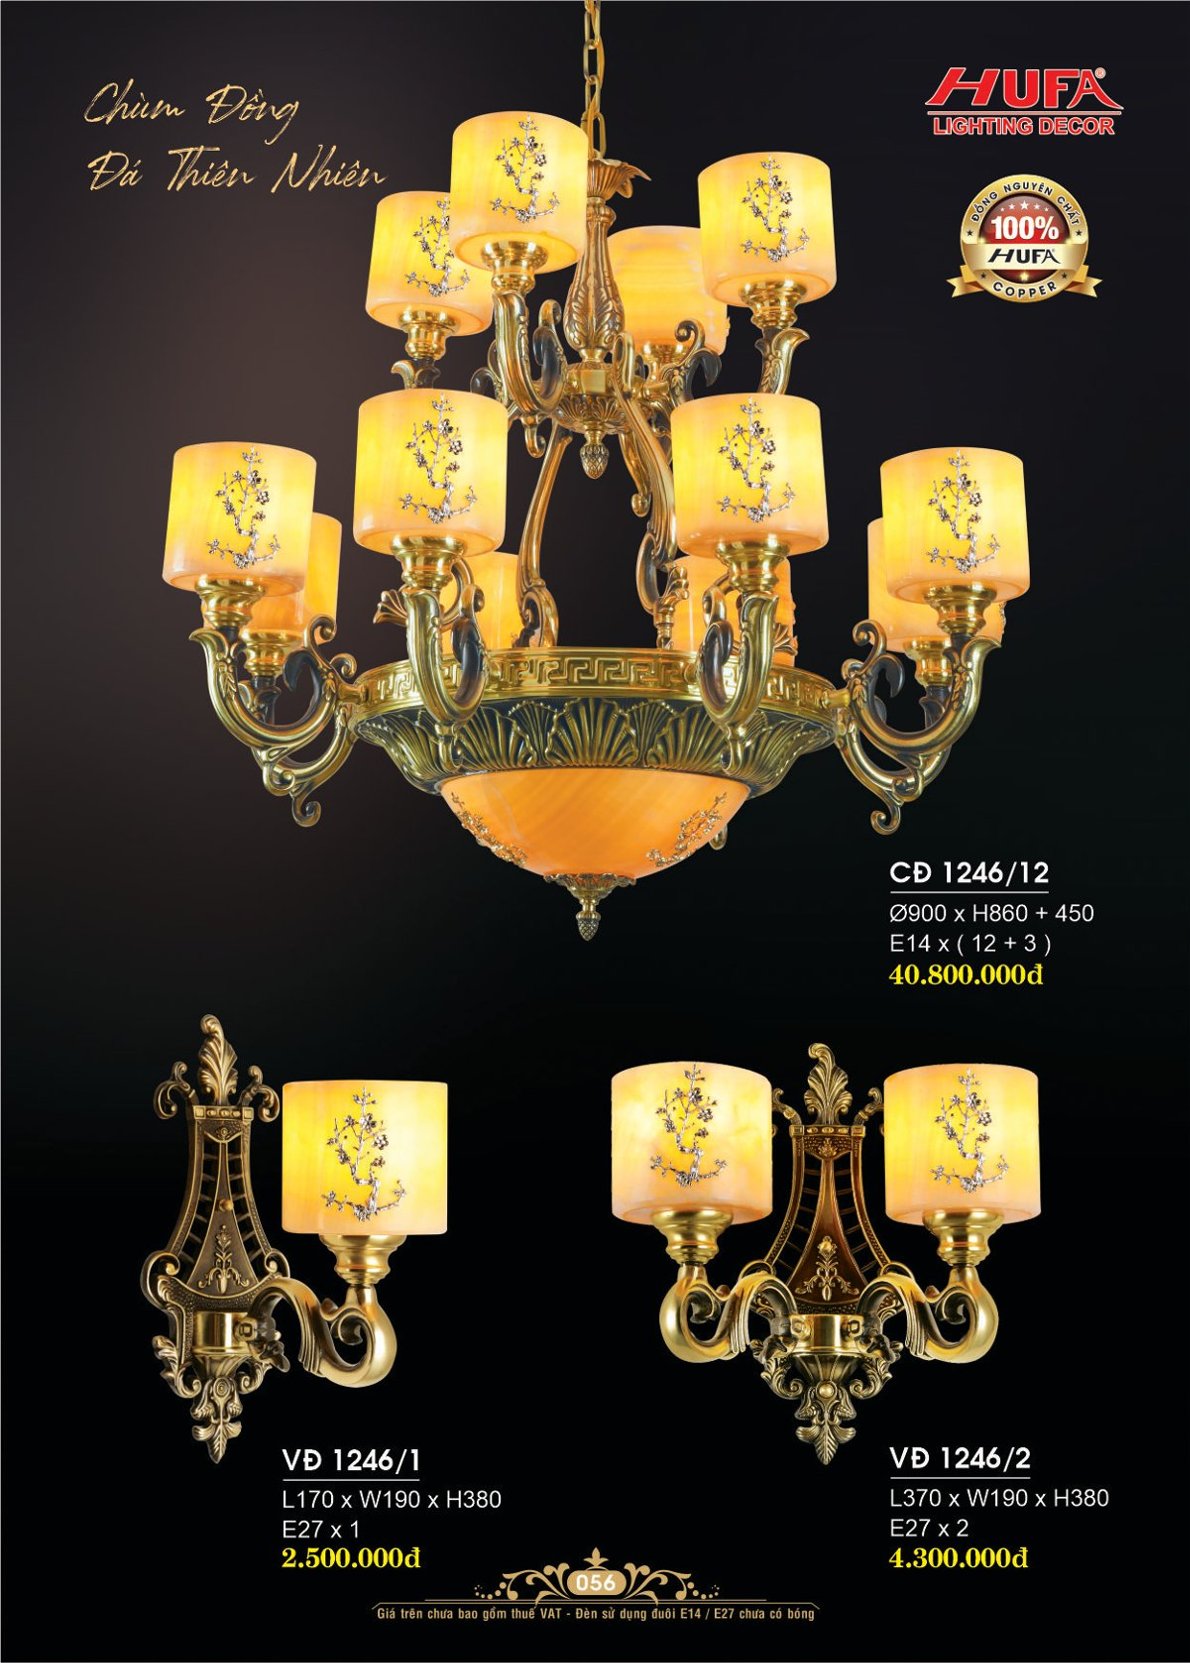 Đèn chùm đồng nguyên chất, đèn trang trí Hufa CĐ 1095/16 cao cấp, giá rẻ, bảo hành lâu dài, hỗ trợ lắp đặt, giao hàng toàn quốc. Đèn chùm đồng Hufa được bảo trì trọn đời.